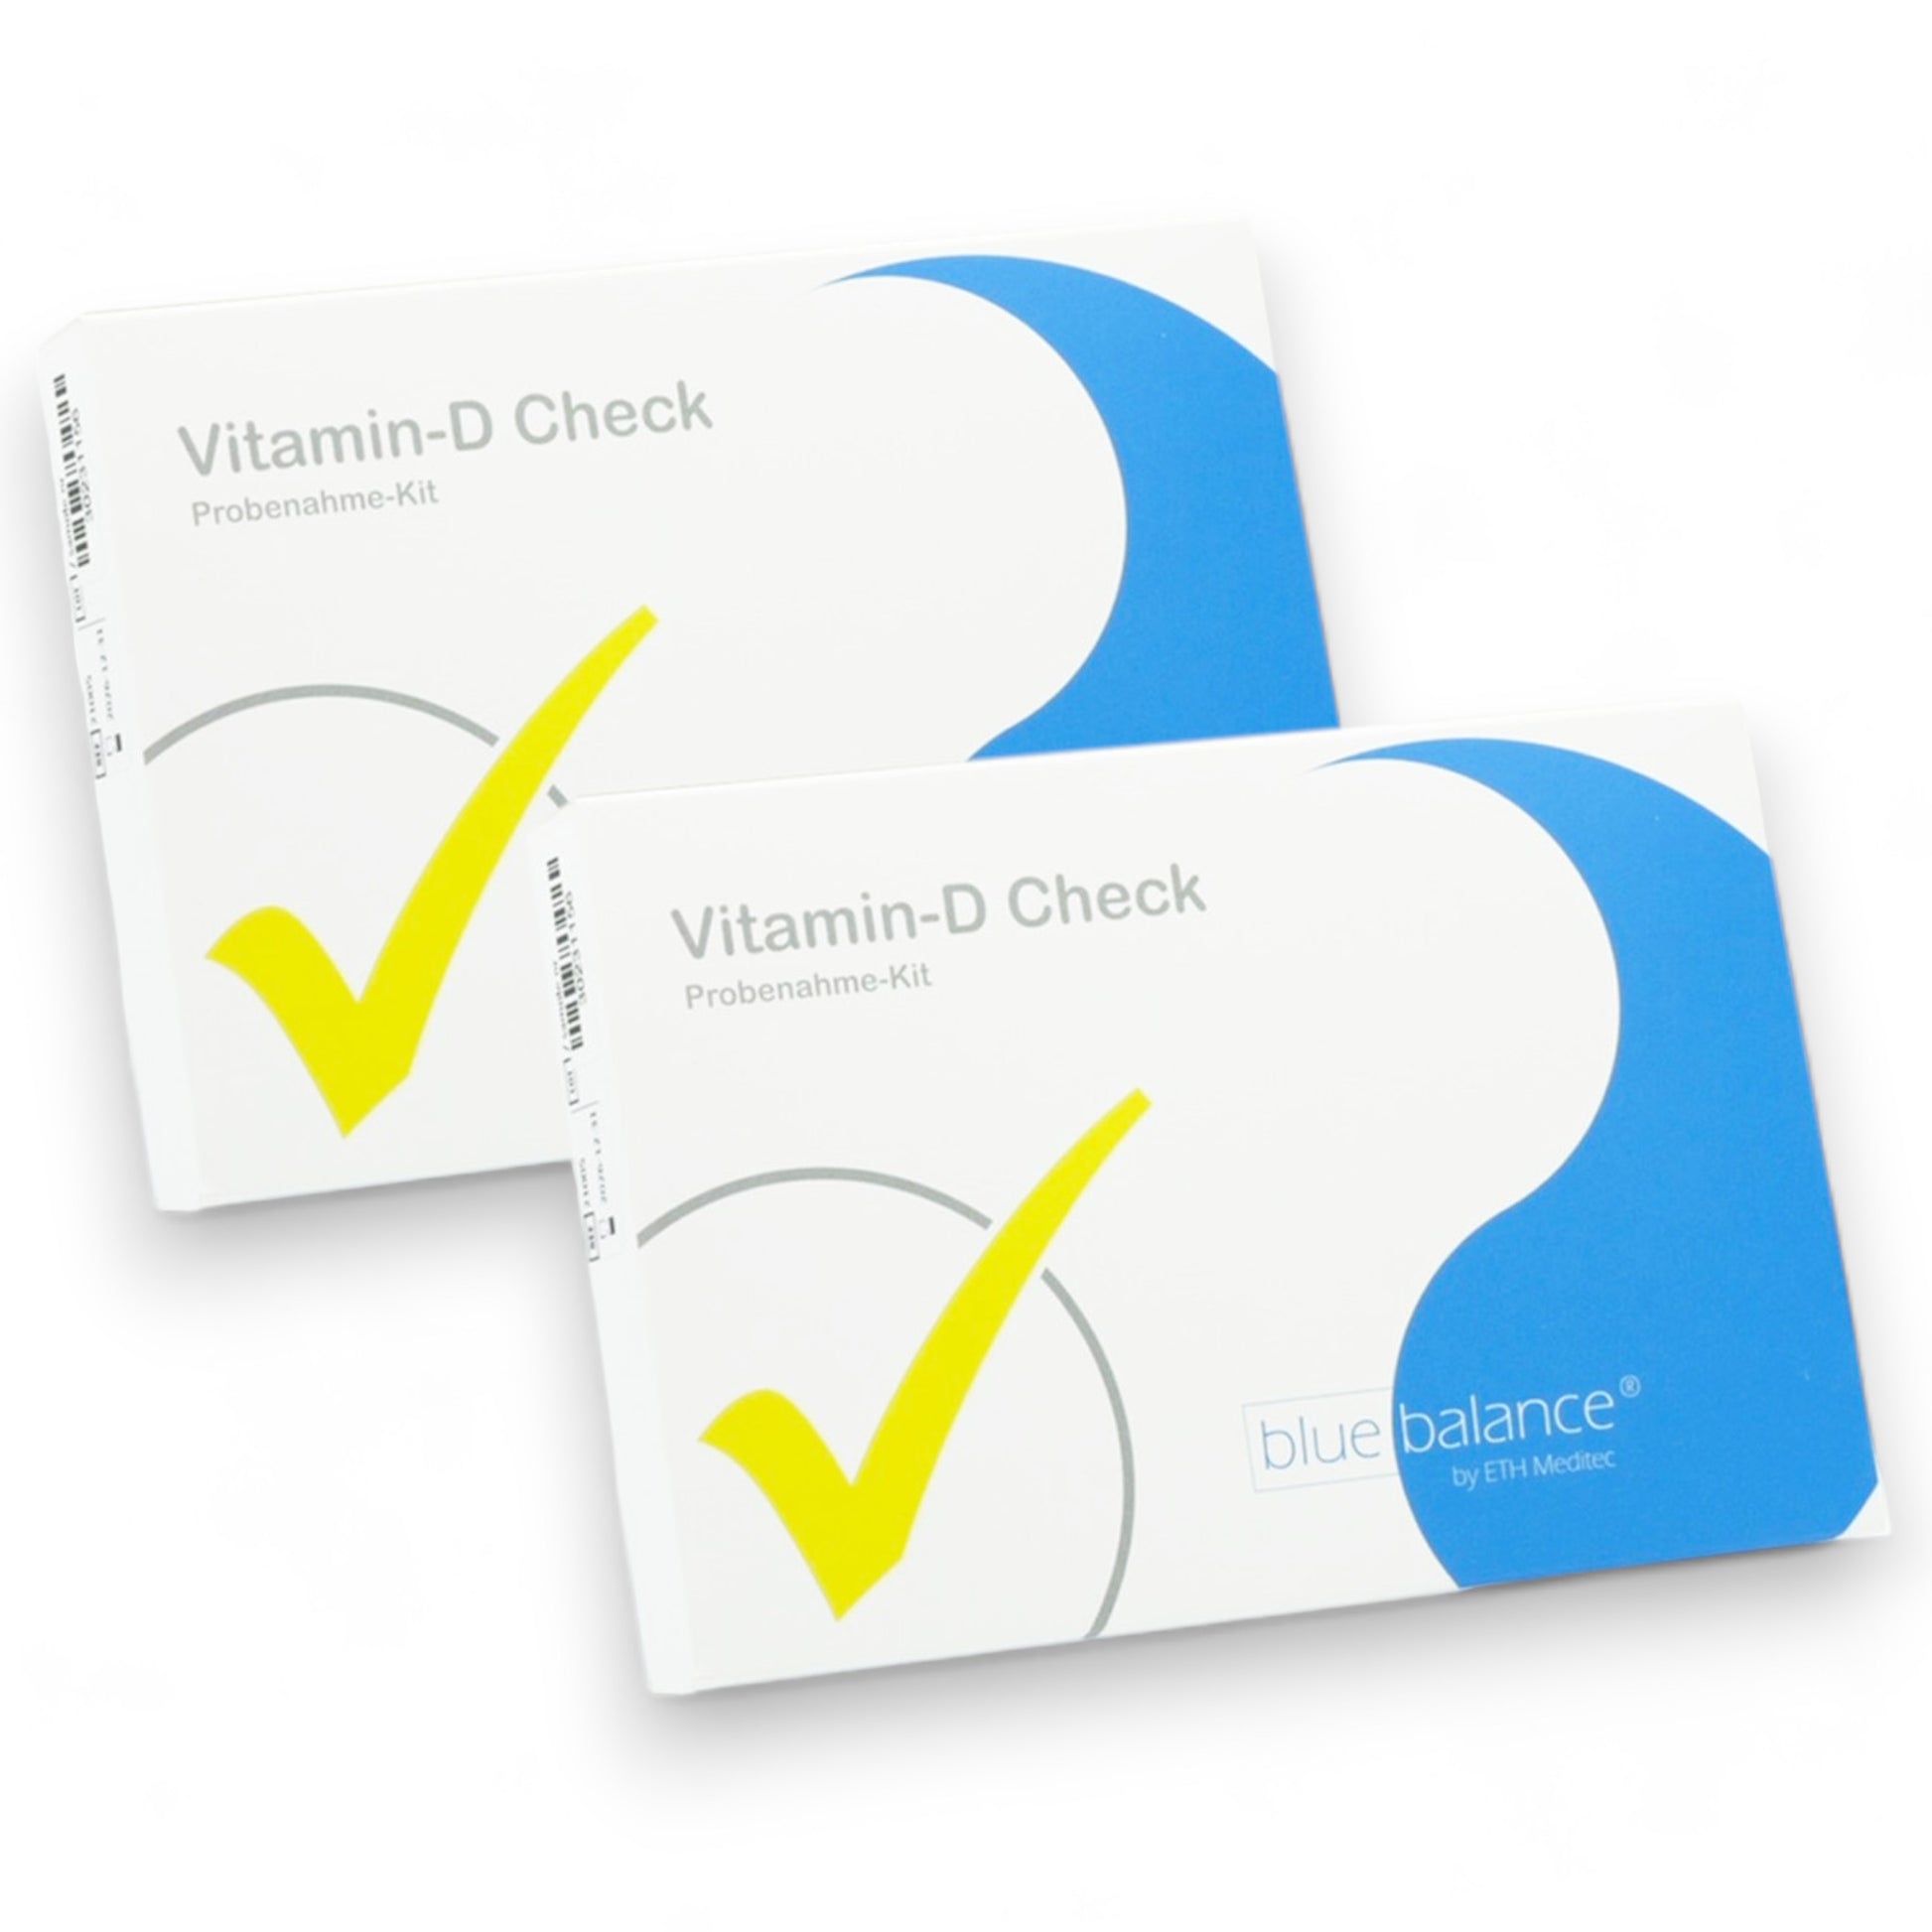 Sichern Sie sich die Vorteilspacks des blue balance® Vitamin D Tests! Ermitteln Sie Ihren Vitamin-D-Wert schnell und unkompliziert und beugen Sie einem Mangel frühzeitig vor. Präsentiert von ETH Meditec auf einem weißen Hintergrund.